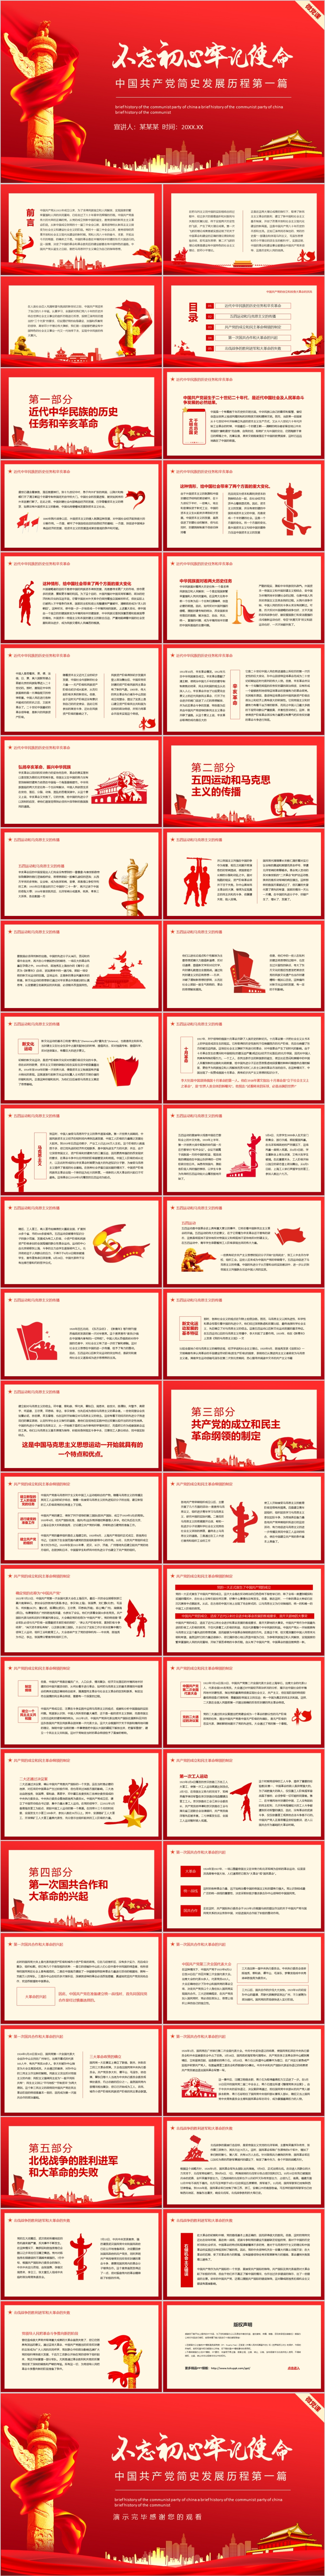 不忘初心牢记使命中国共产党简史发展历程第一篇动态PPT